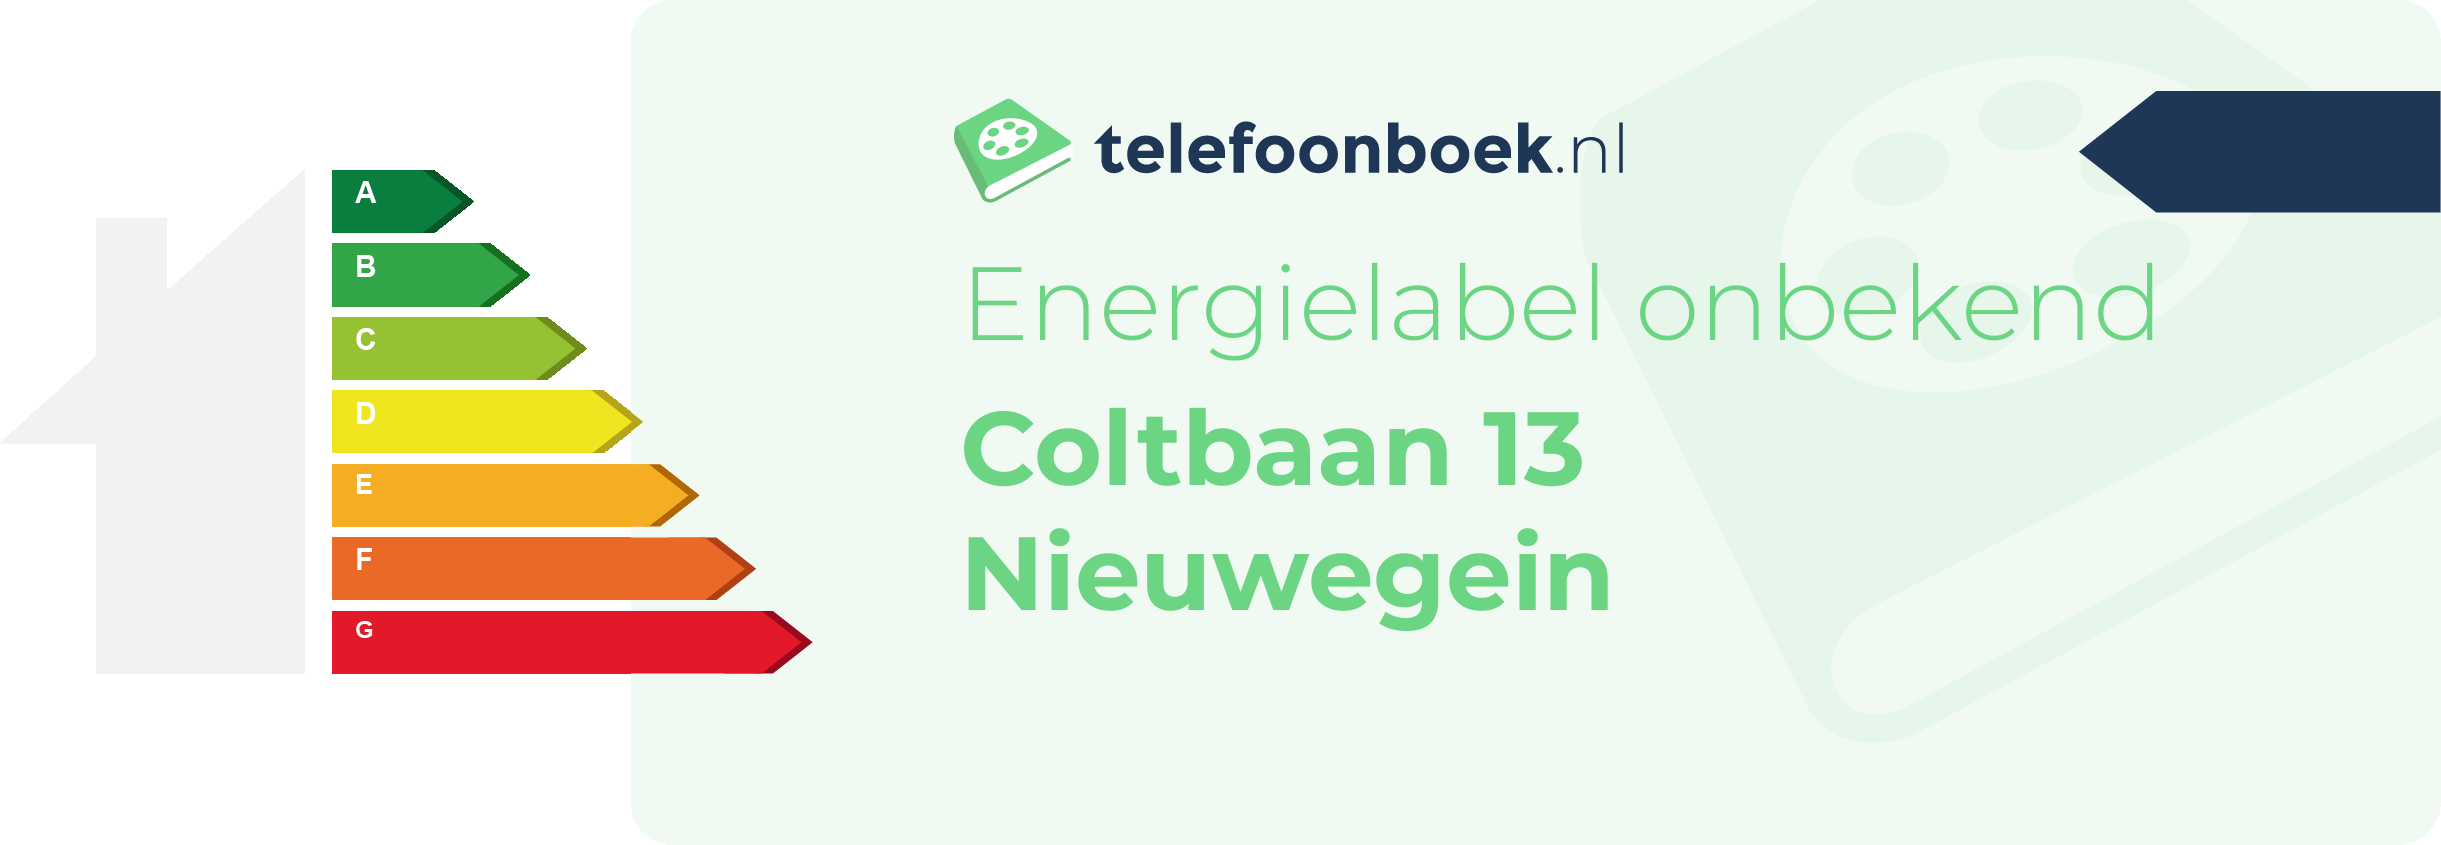 Energielabel Coltbaan 13 Nieuwegein